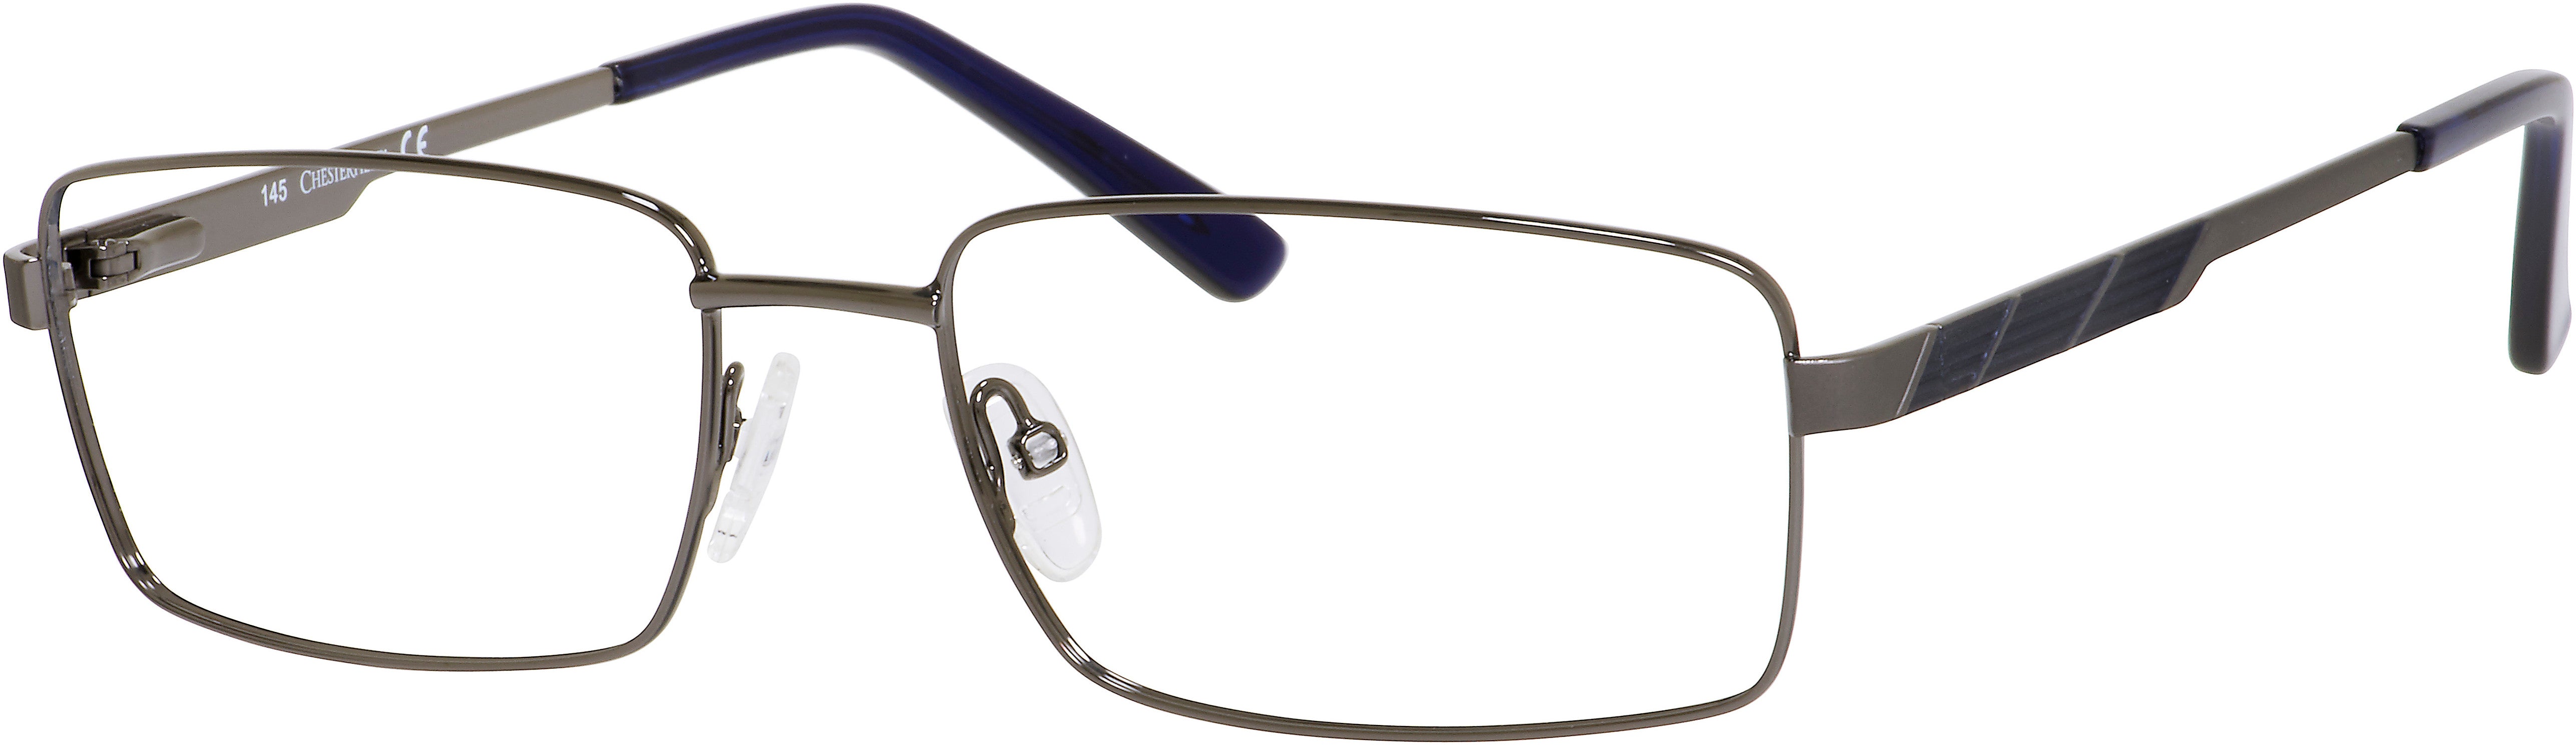  Chesterfield 31 XL Rectangular Eyeglasses 0FL1-0FL1  Gunmetal (00 Demo Lens)